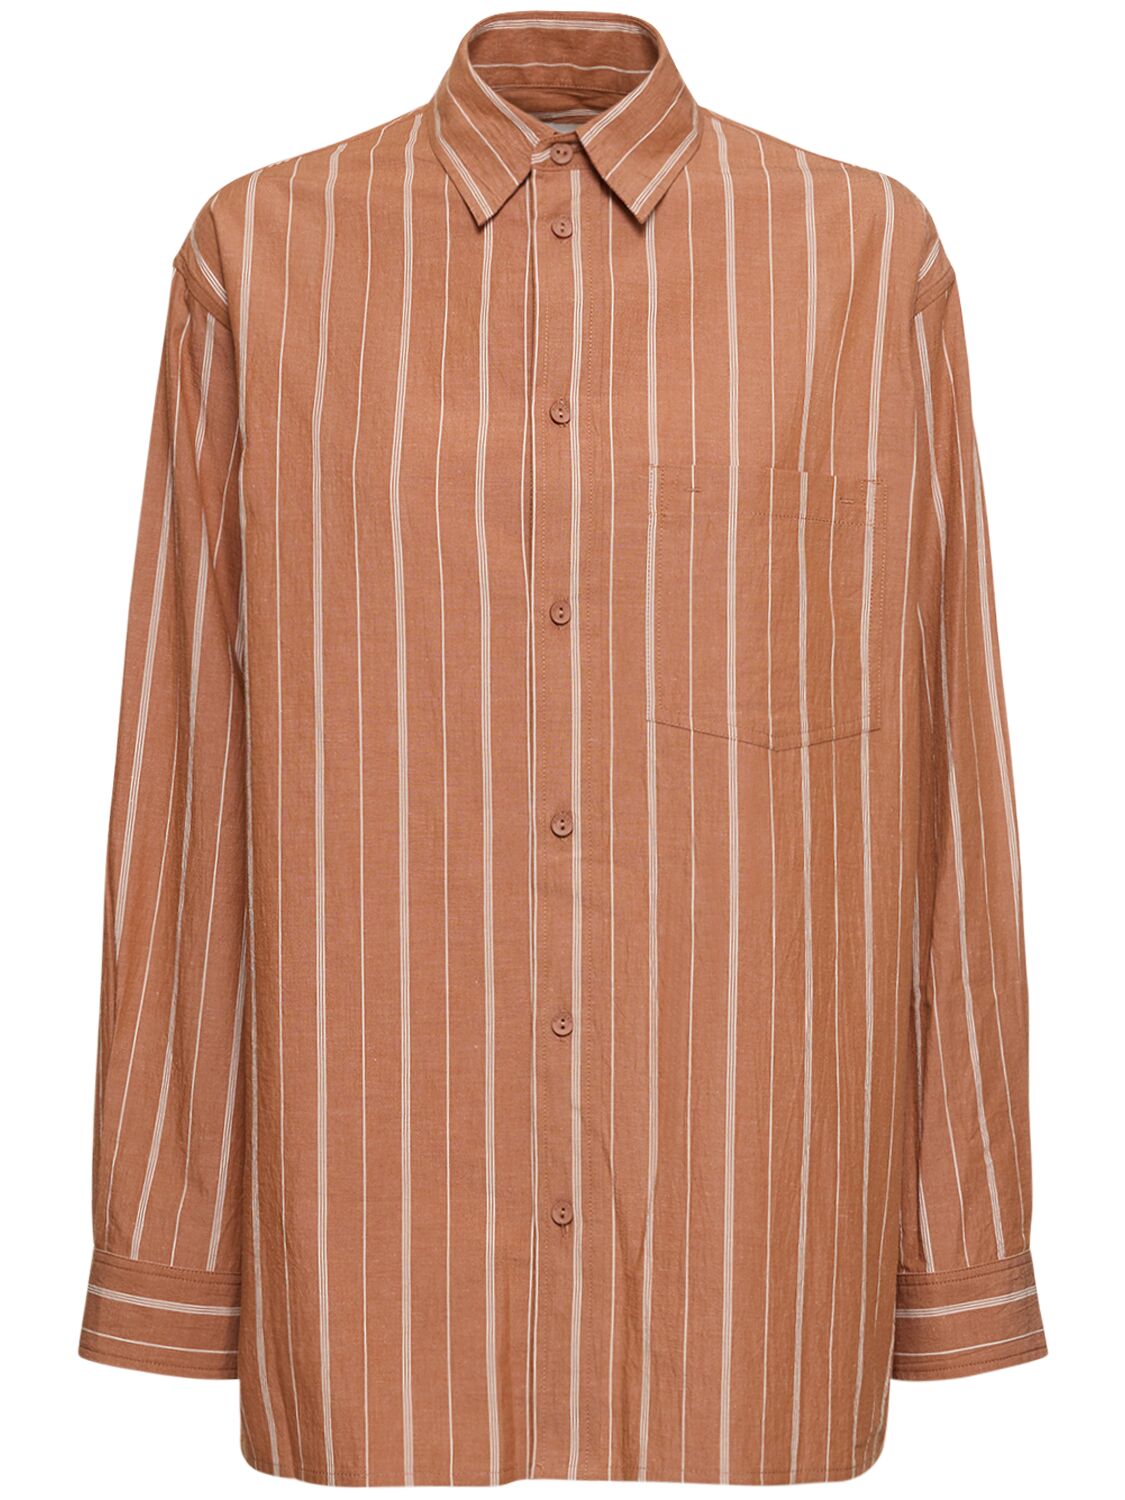 Striped Cotton & Linen Shirt